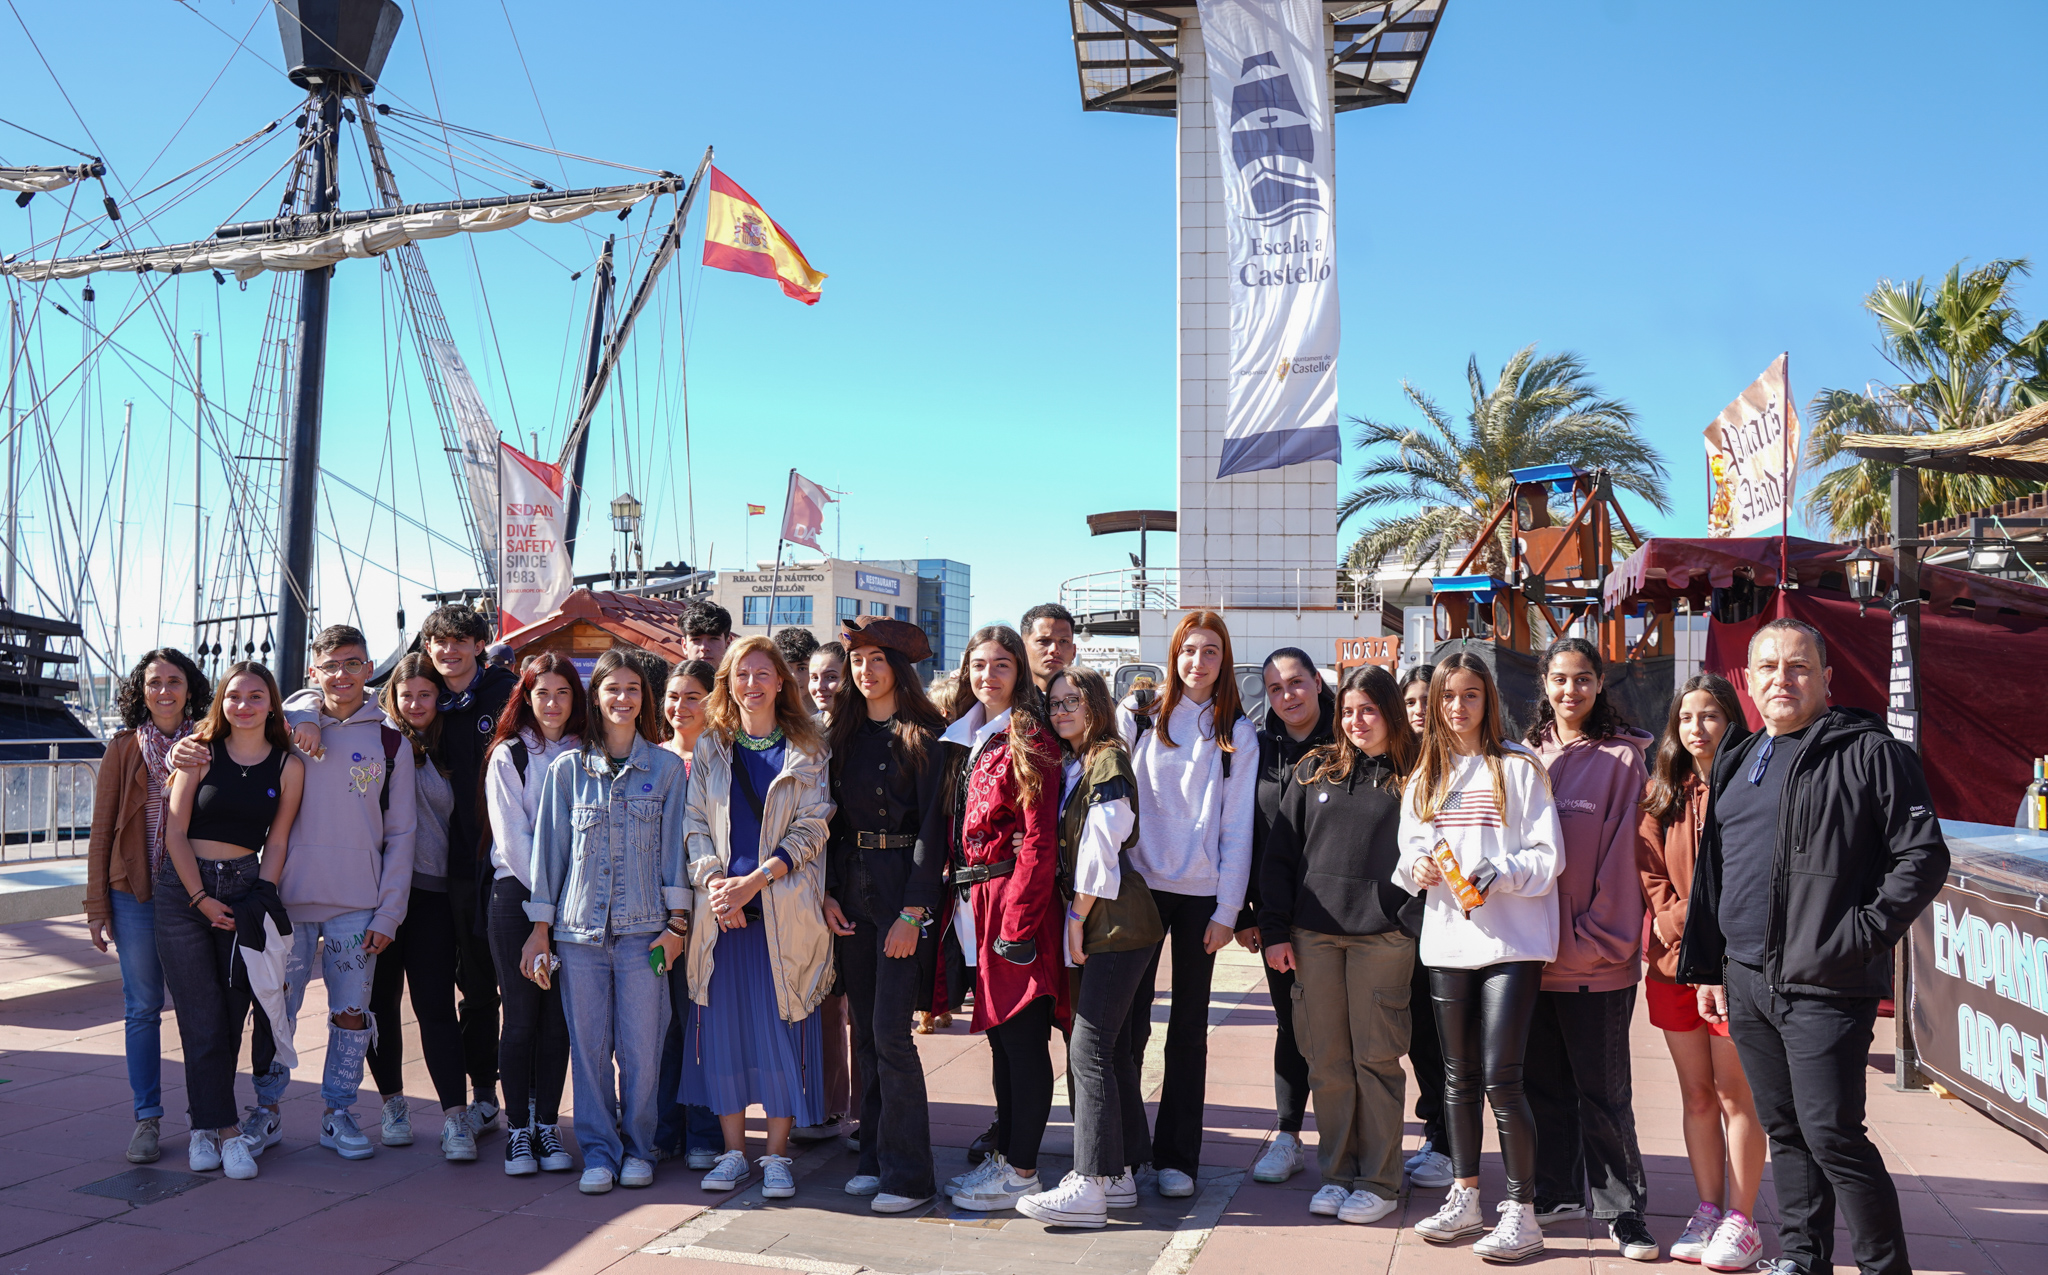 Las embarcaciones participantes en la VI edición de ‘Escala a Castelló’ reciben las últimas visitas